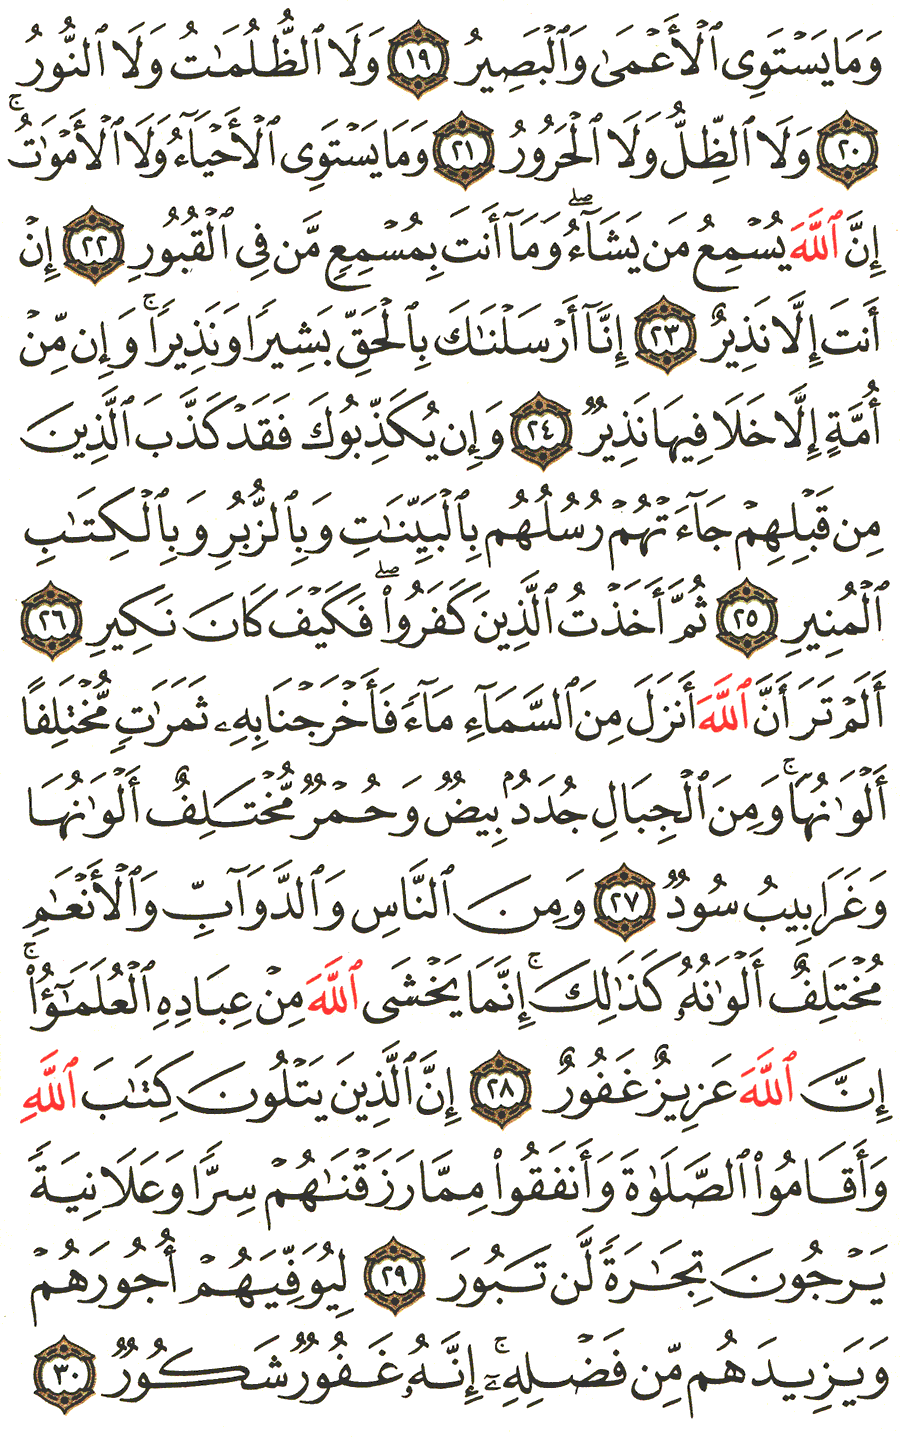 الصفحة 437 من القرآن الكريم